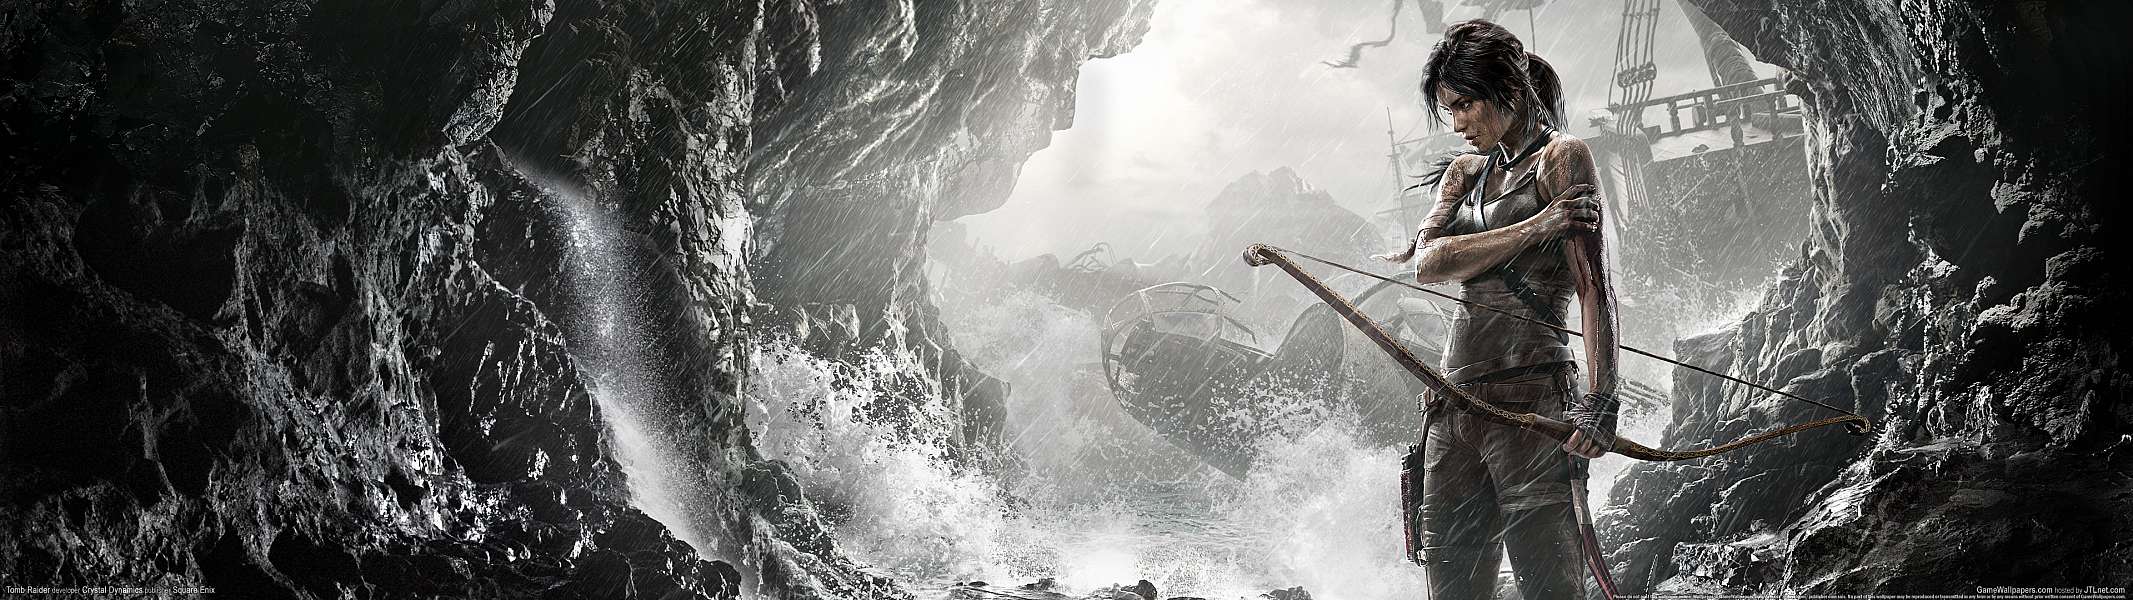 Tomb Raider dual screen fond d'cran